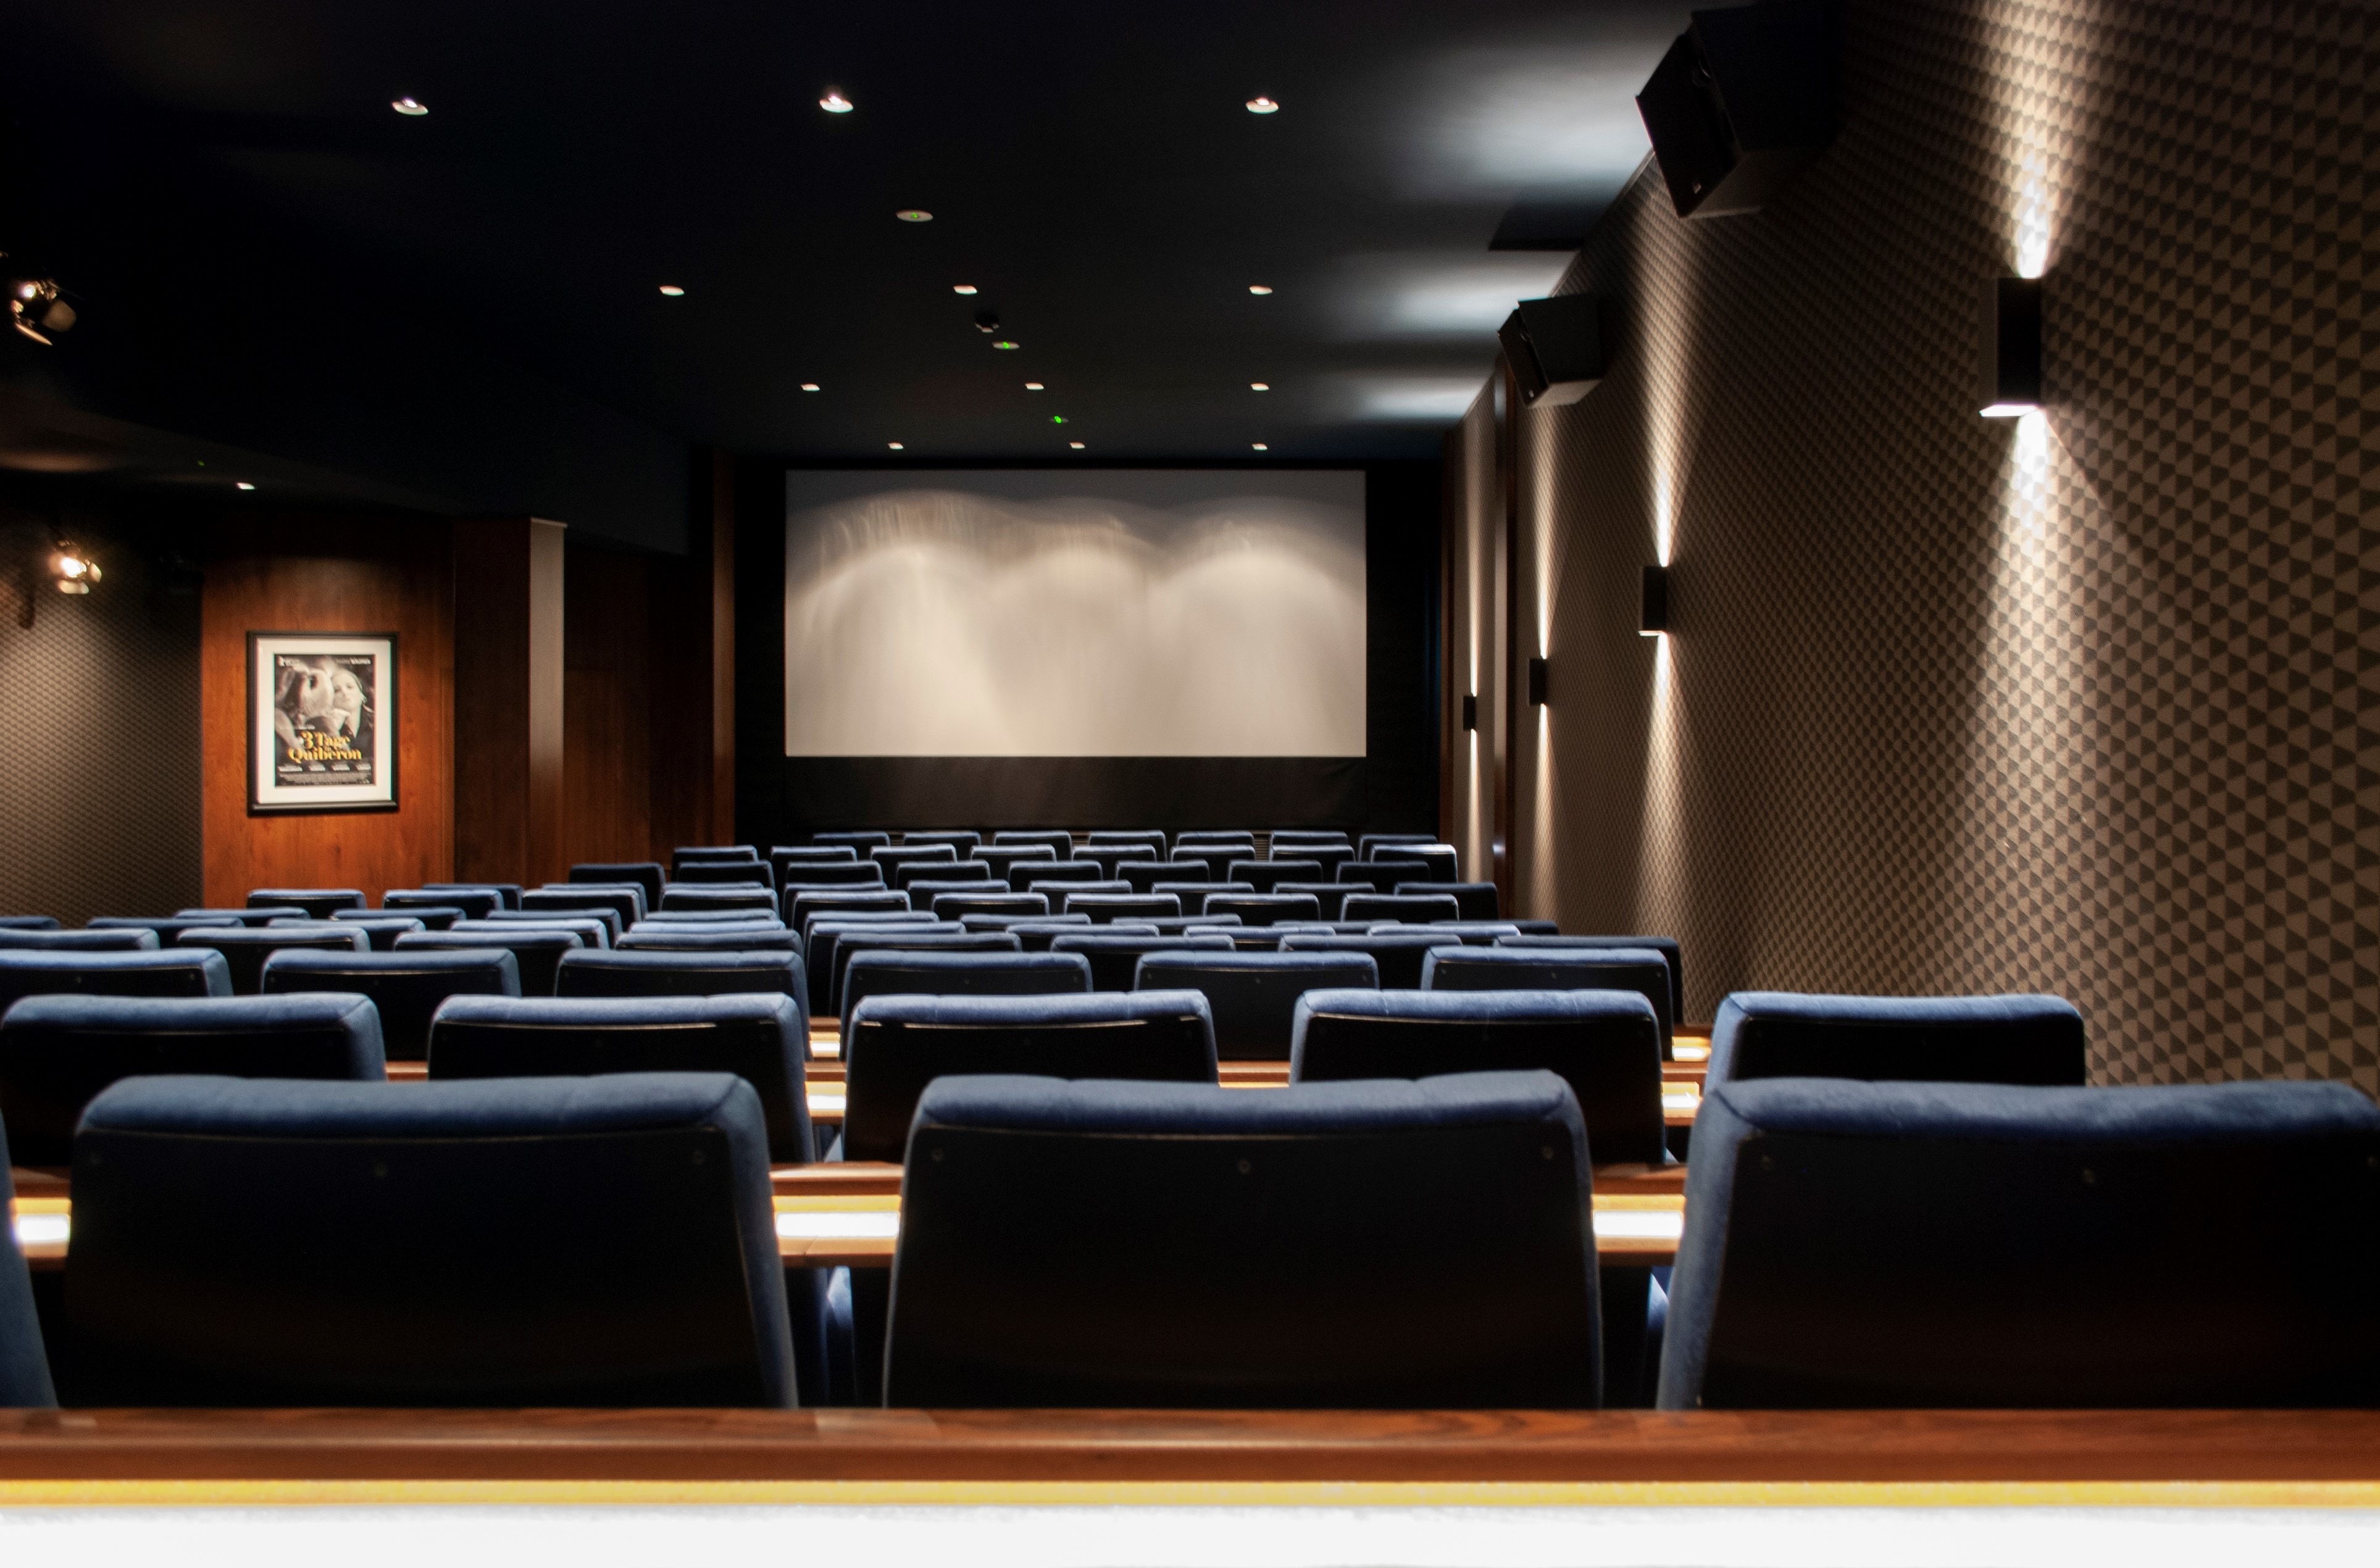 Das Cine-Studio liefert modernsten Dolby Surround Digital für alle 115 Gäste., Credit: © Arthouse Kinos Frankfurt